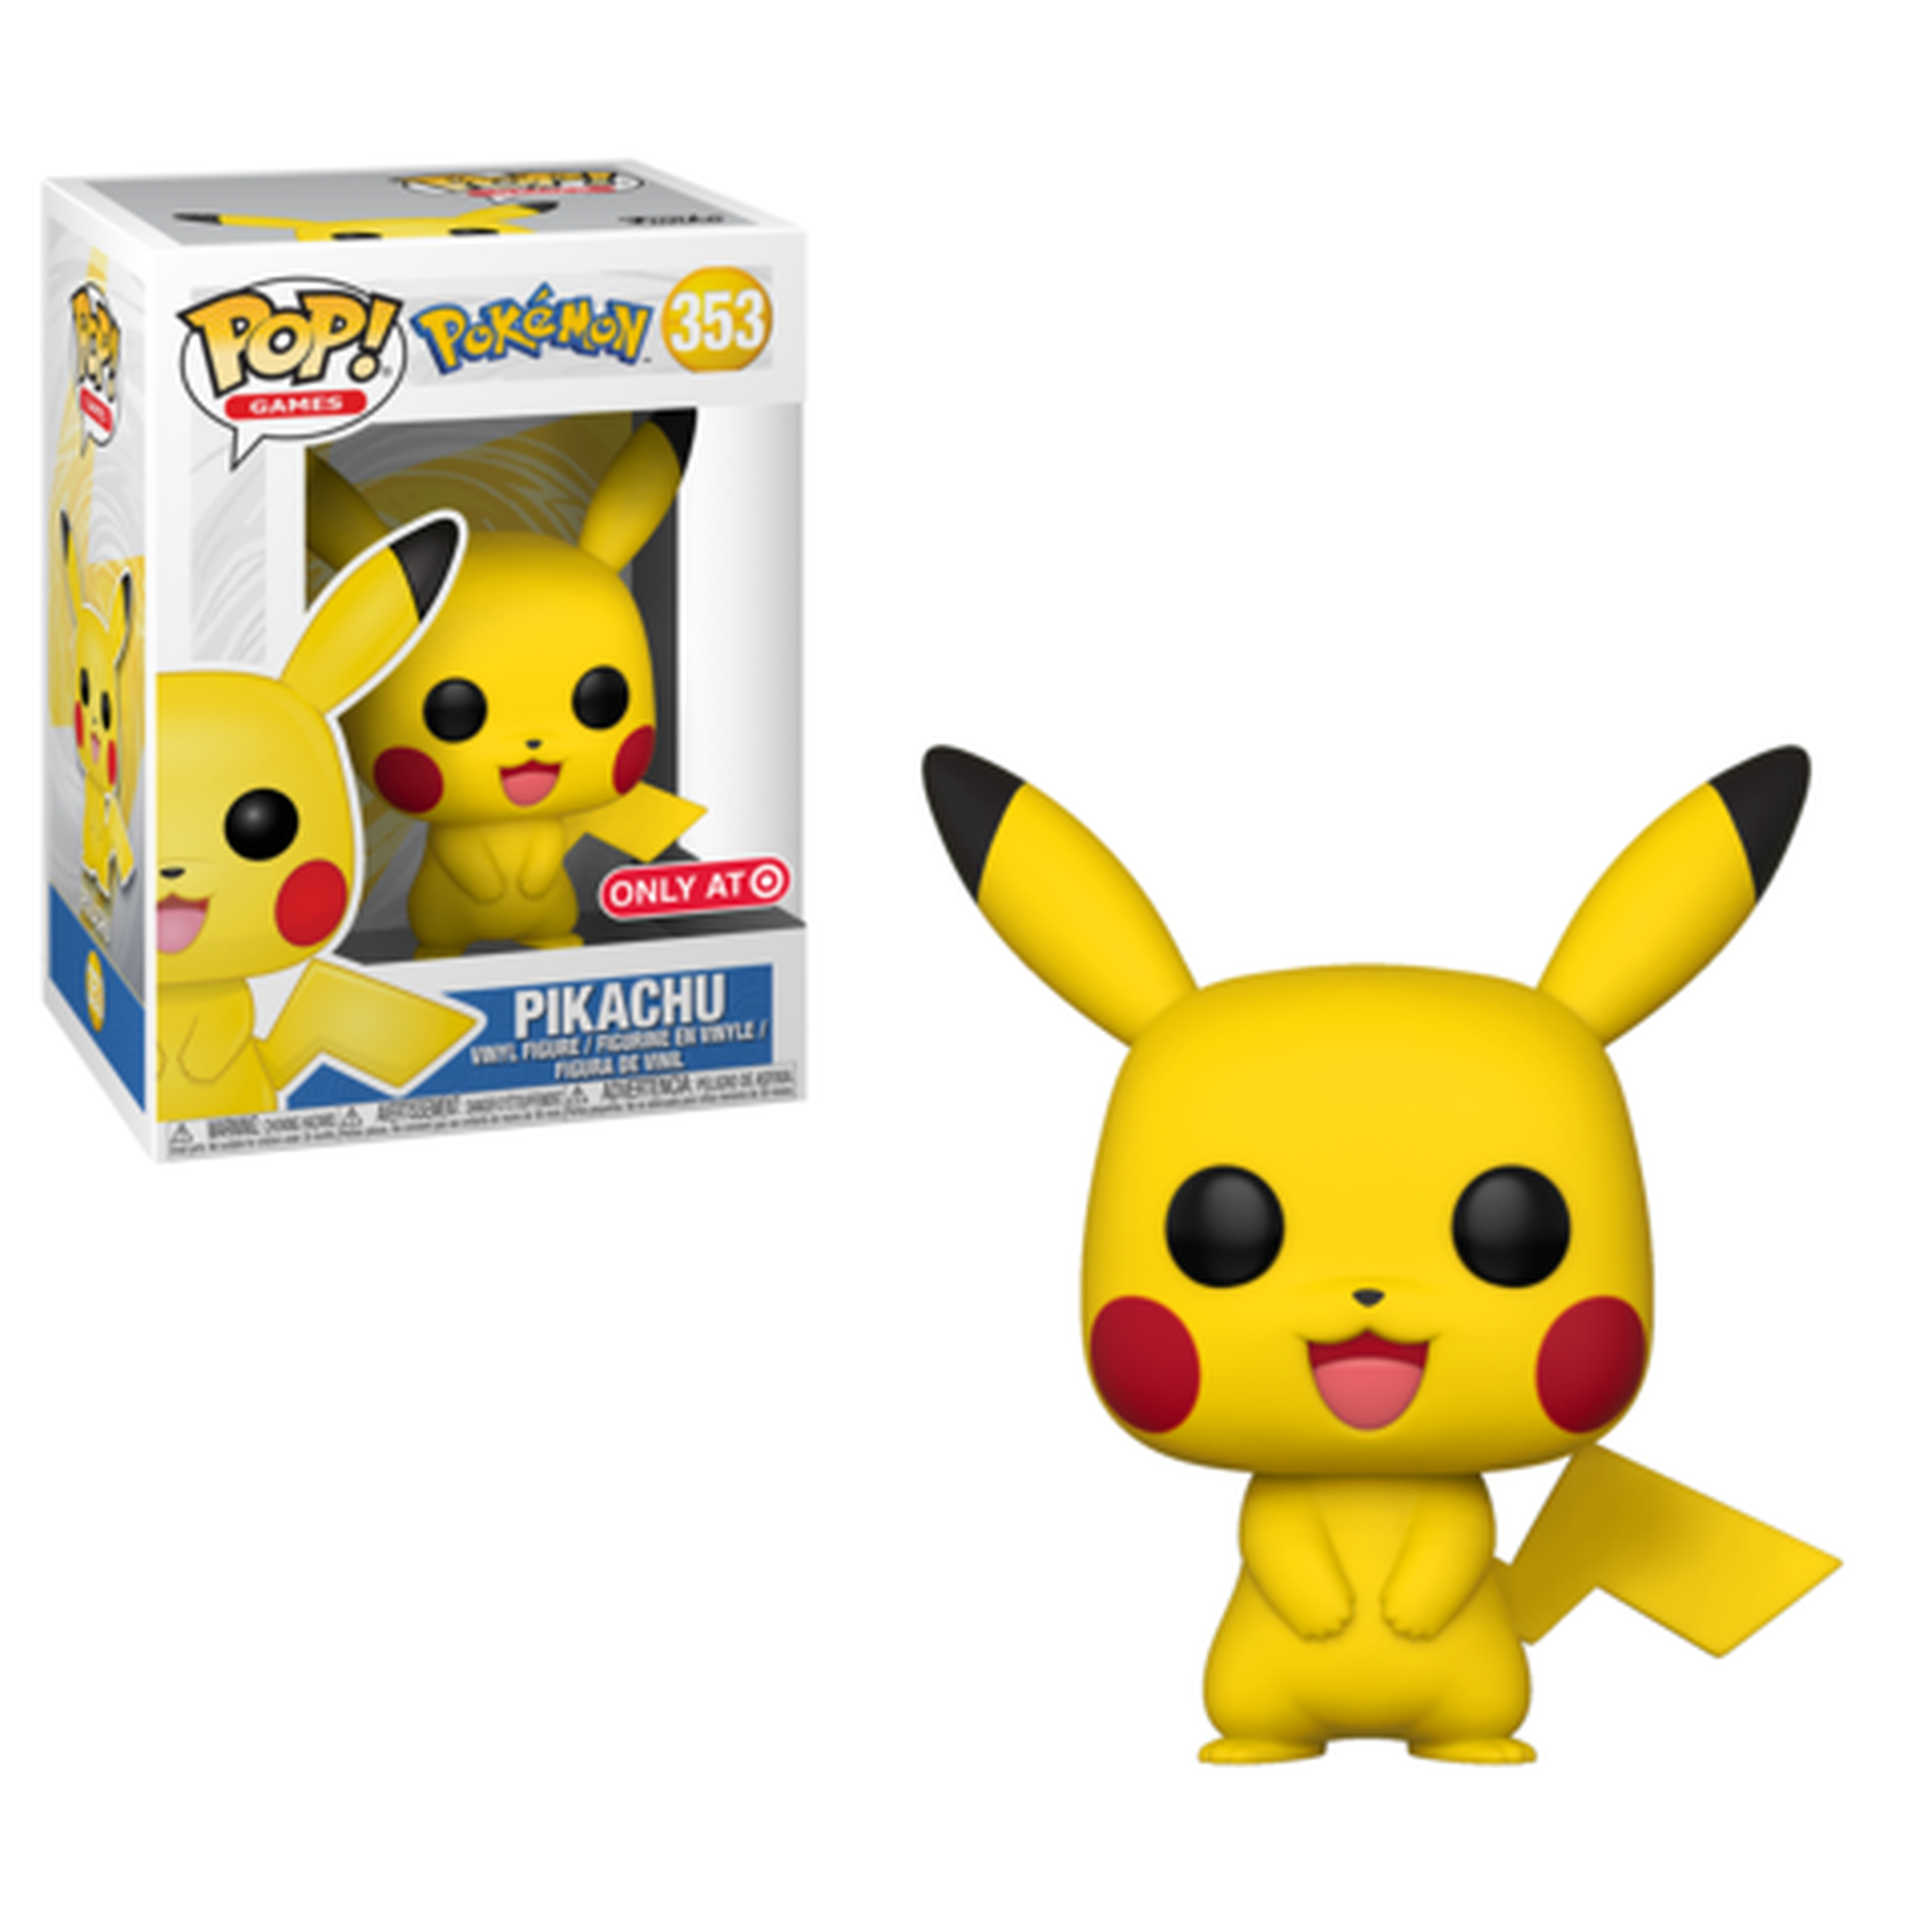 Anunciado Pikachu Pop!, el primer Funko Pop! de Pokémon